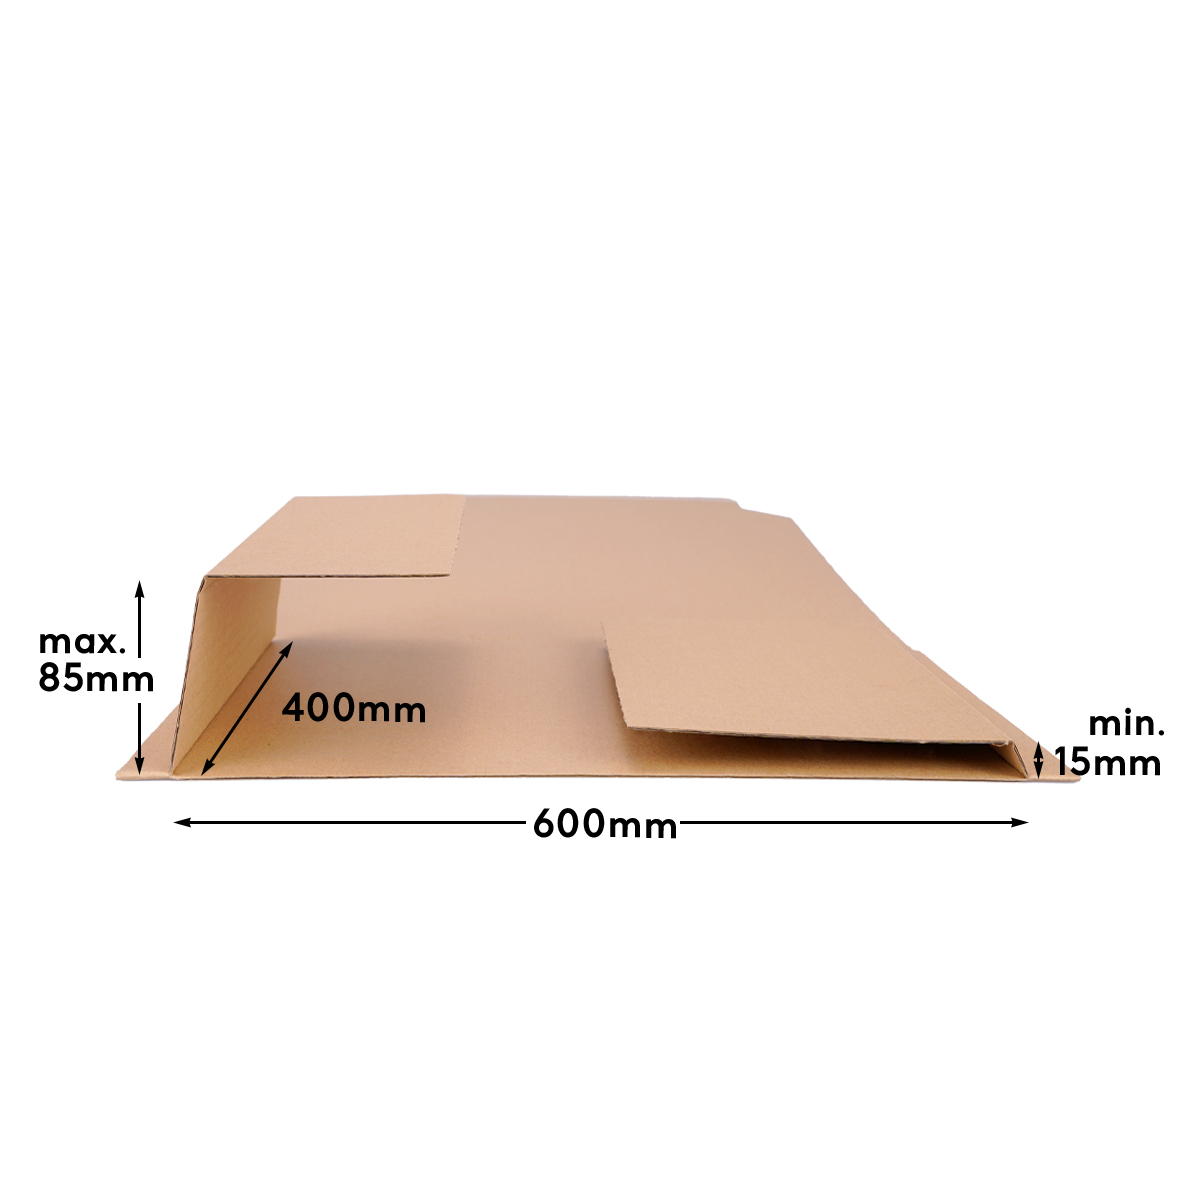 Buchverpackung 600x400x10-85 mm Wickelverpackung aus Pappe DIN A2 braun - BV 60